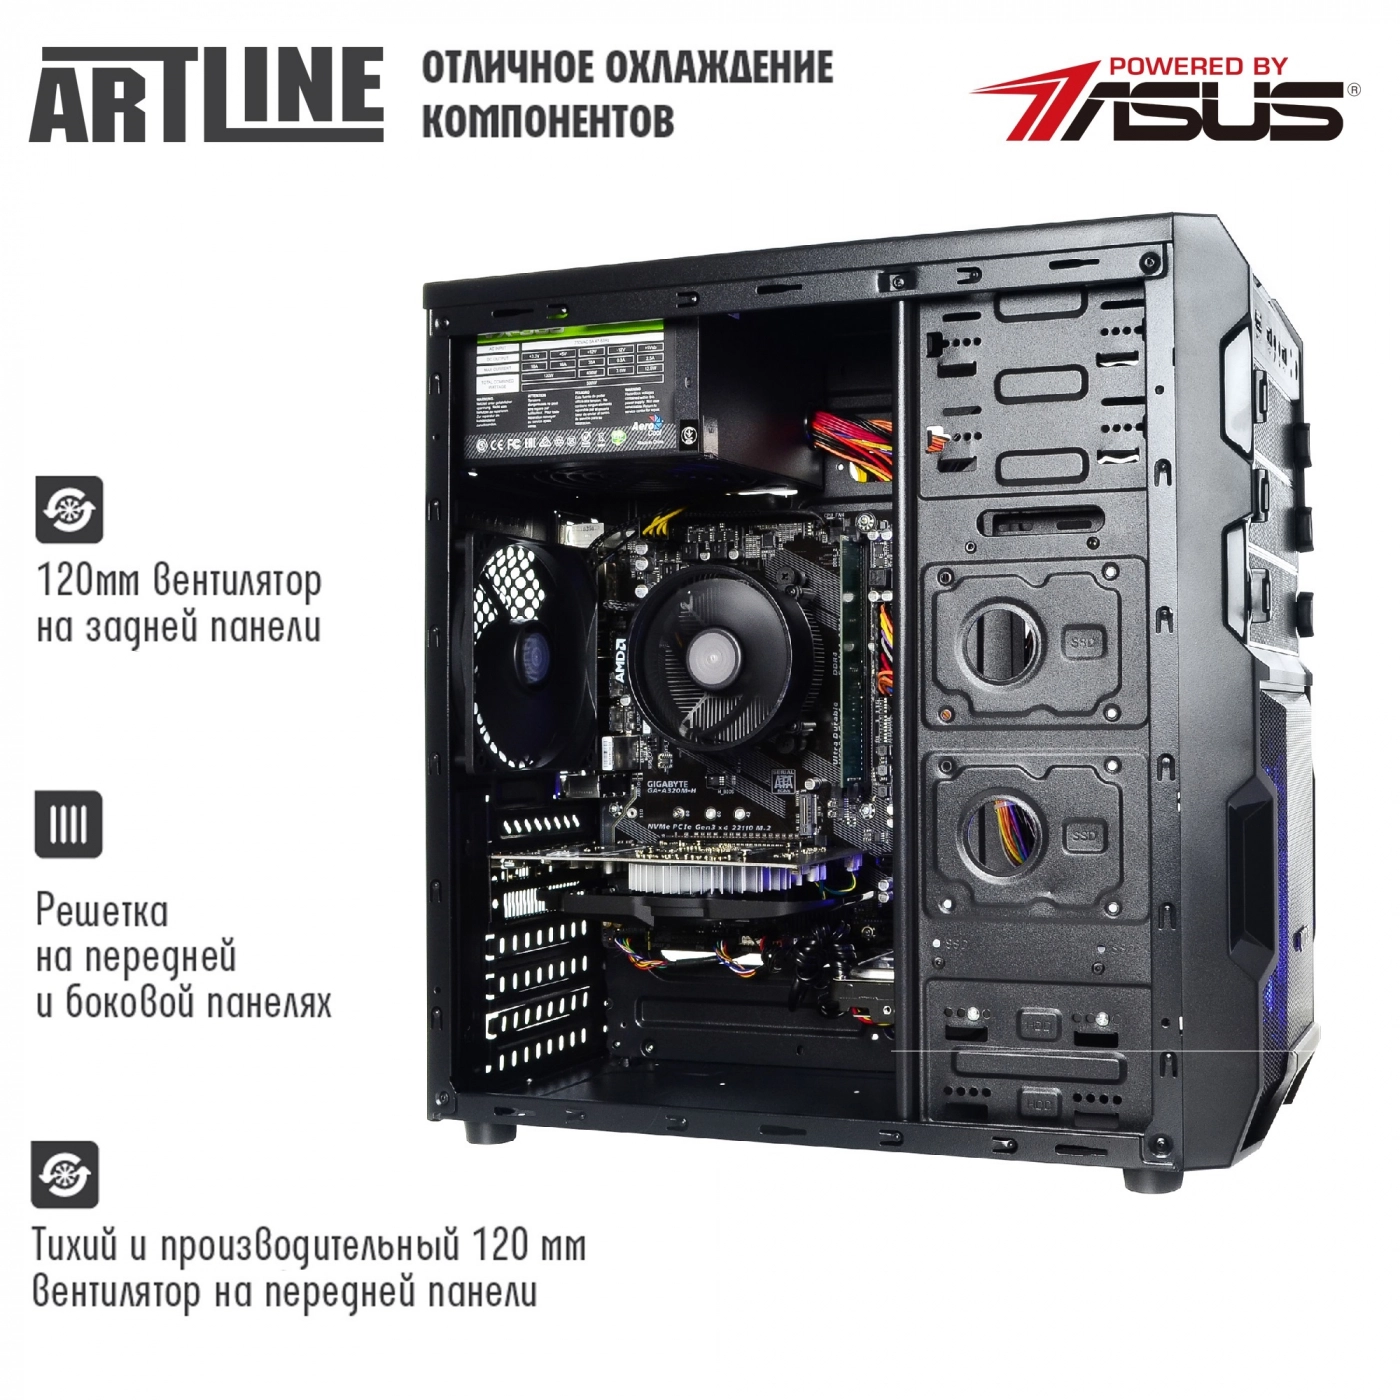 Купить Компьютер ARTLINE Gaming X43v18 - фото 2